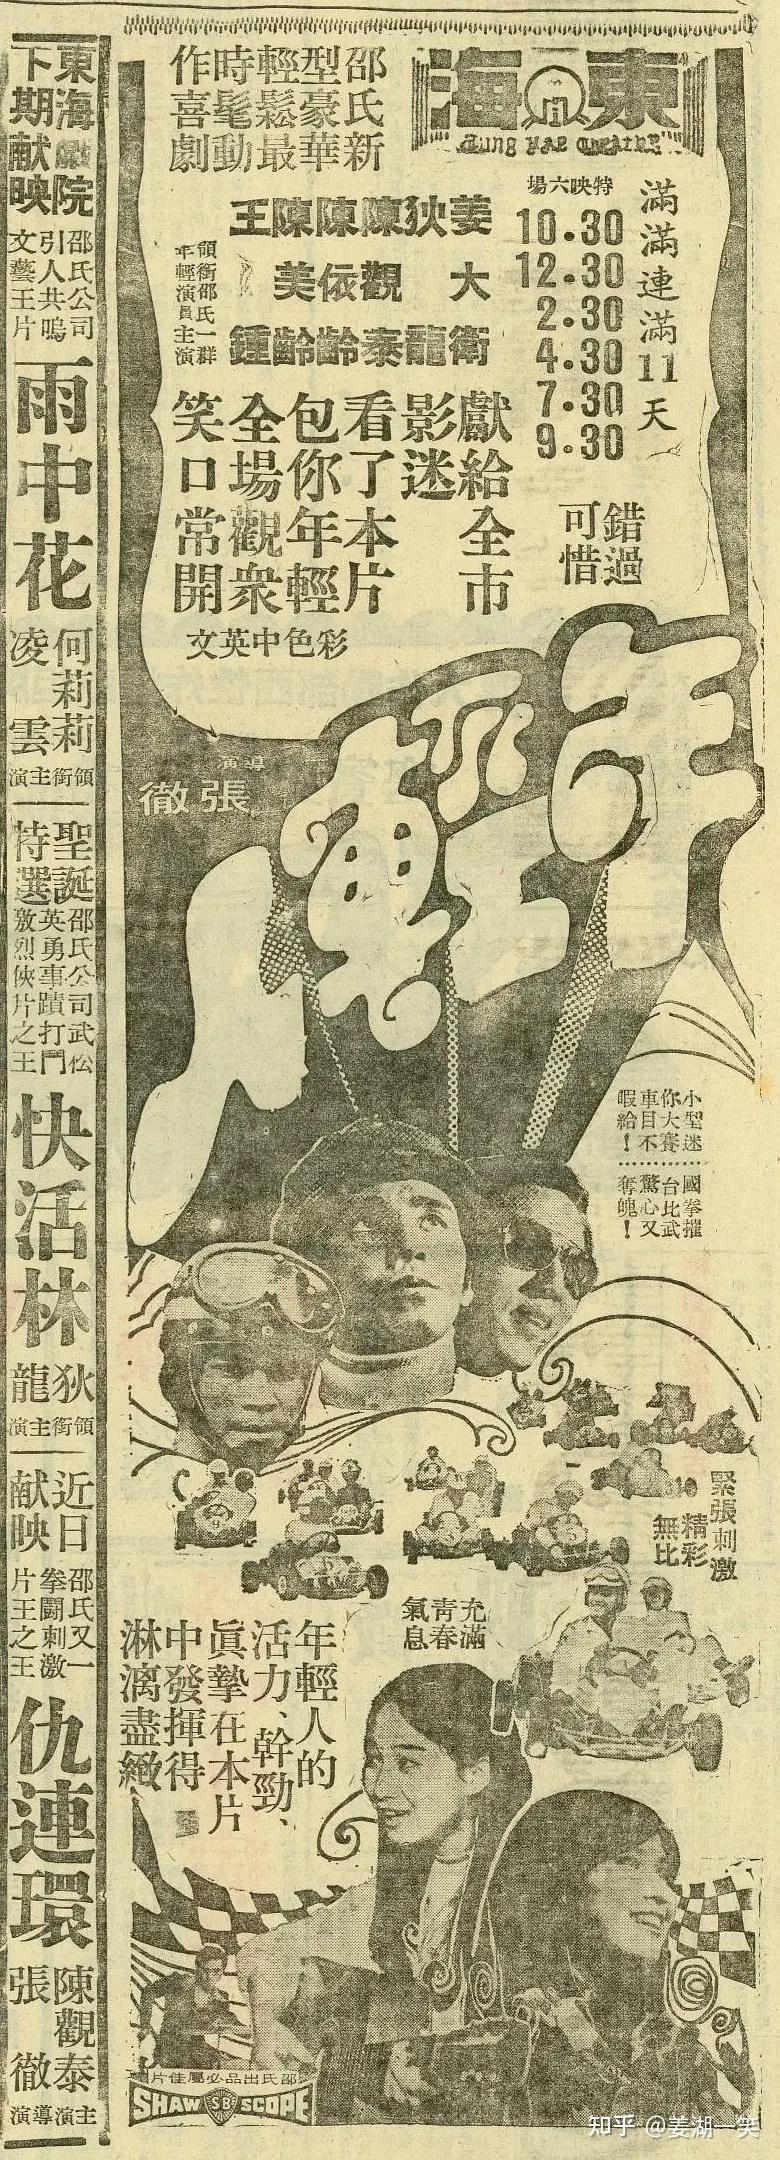 水浒传1973中村敦夫版图片